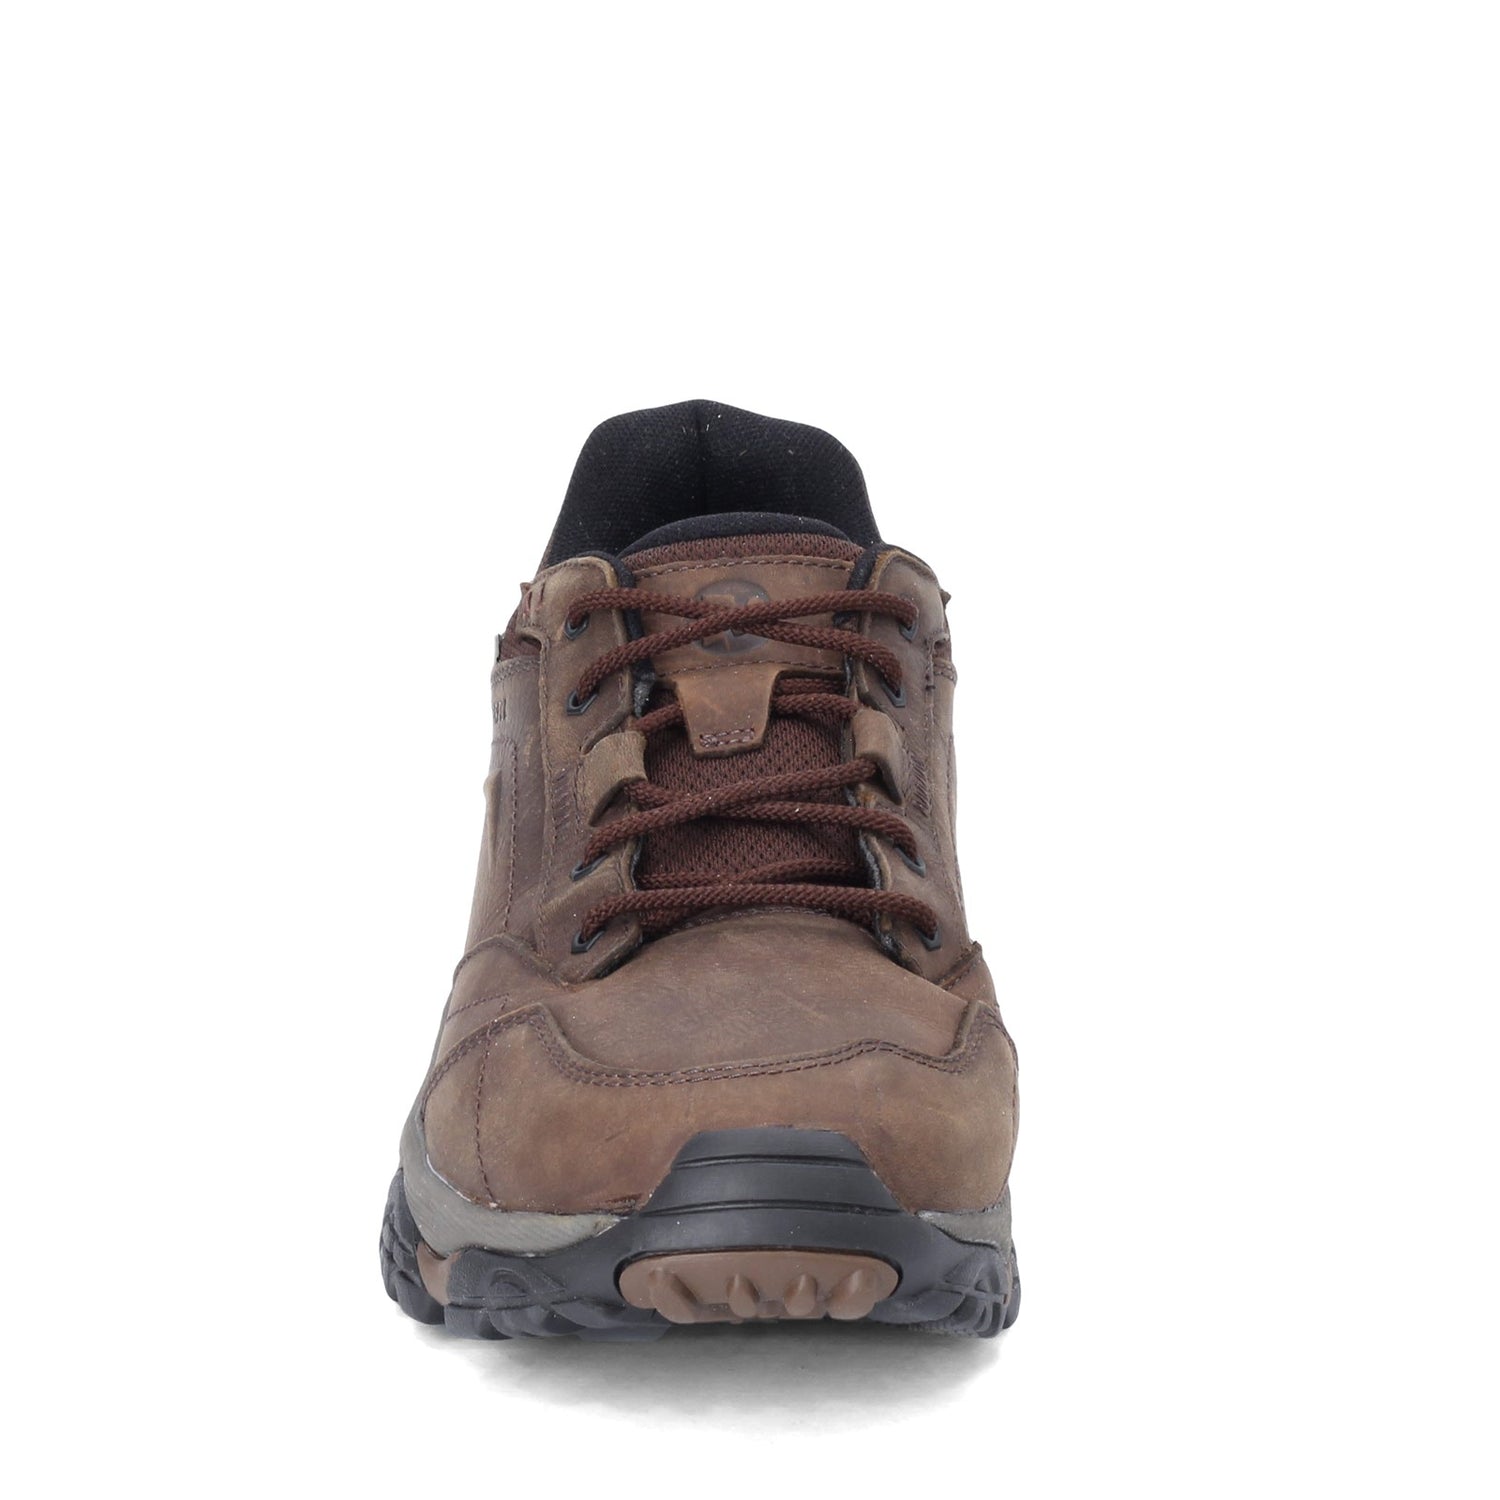 Peltz Shoes  Men's Merrell Moab Adventure Lace Waterproof Hiking Shoe - Wide Width EARTH J91825W